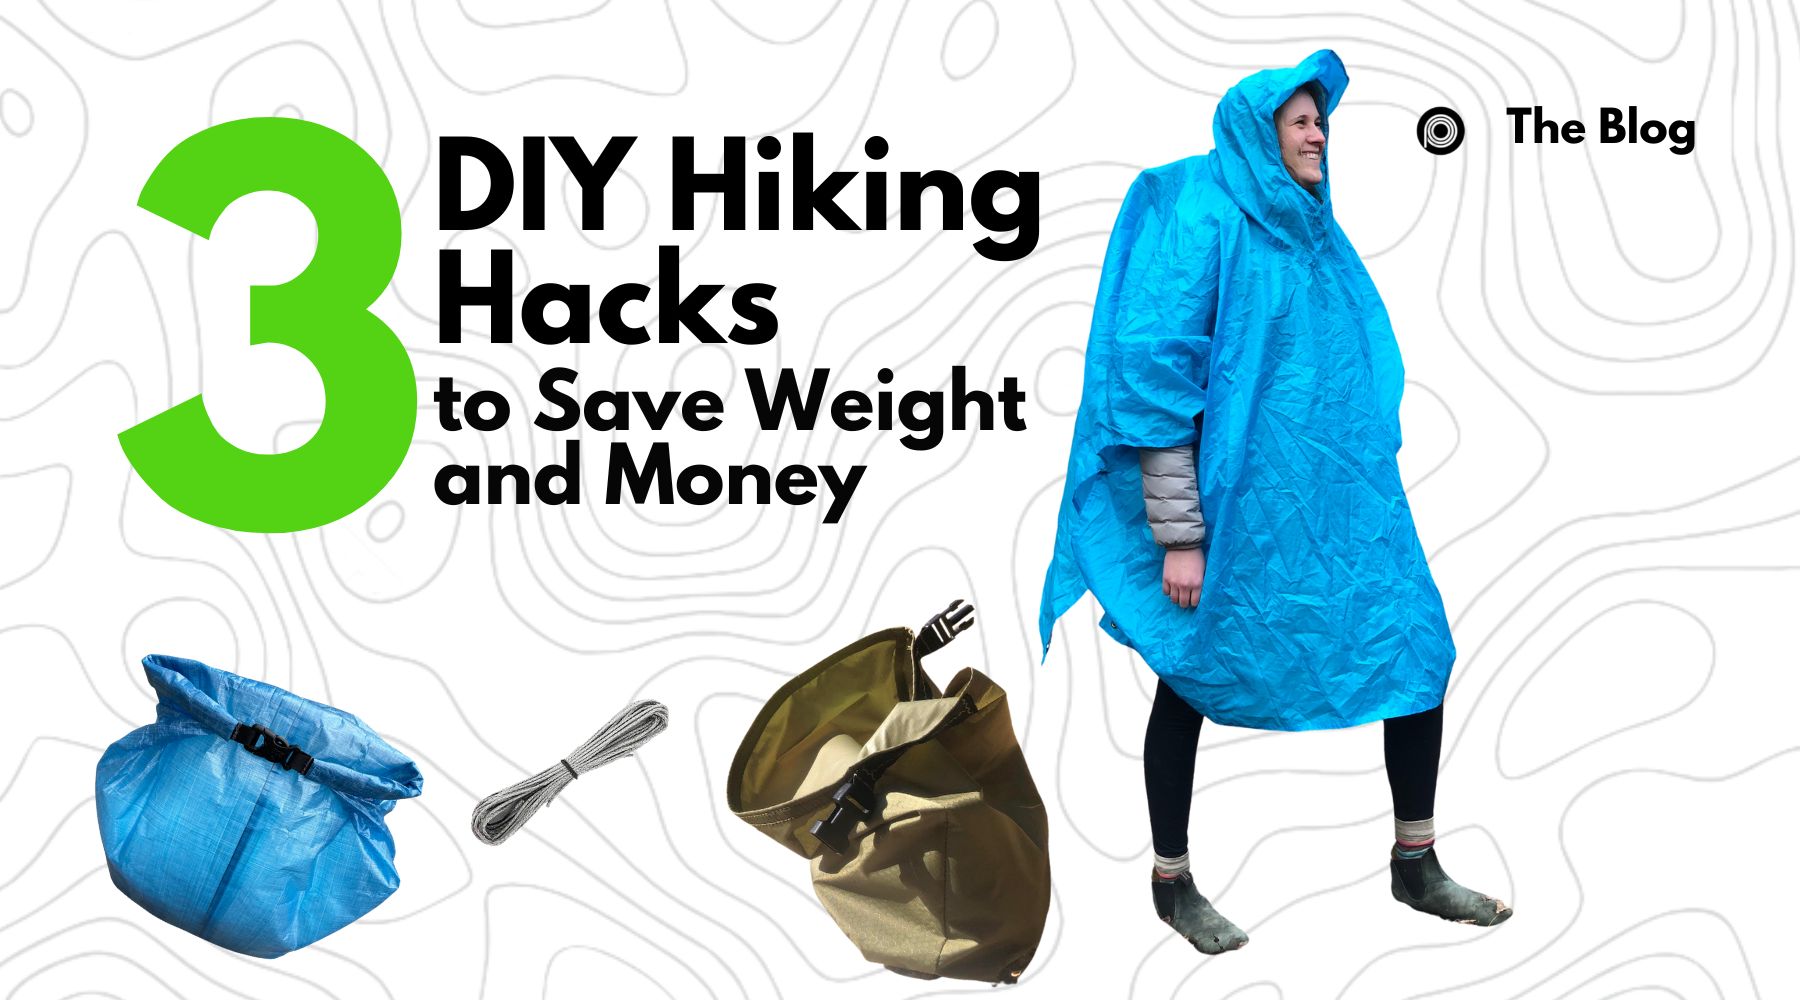 3 DIY Hiking Hacks to Save Weight & Money